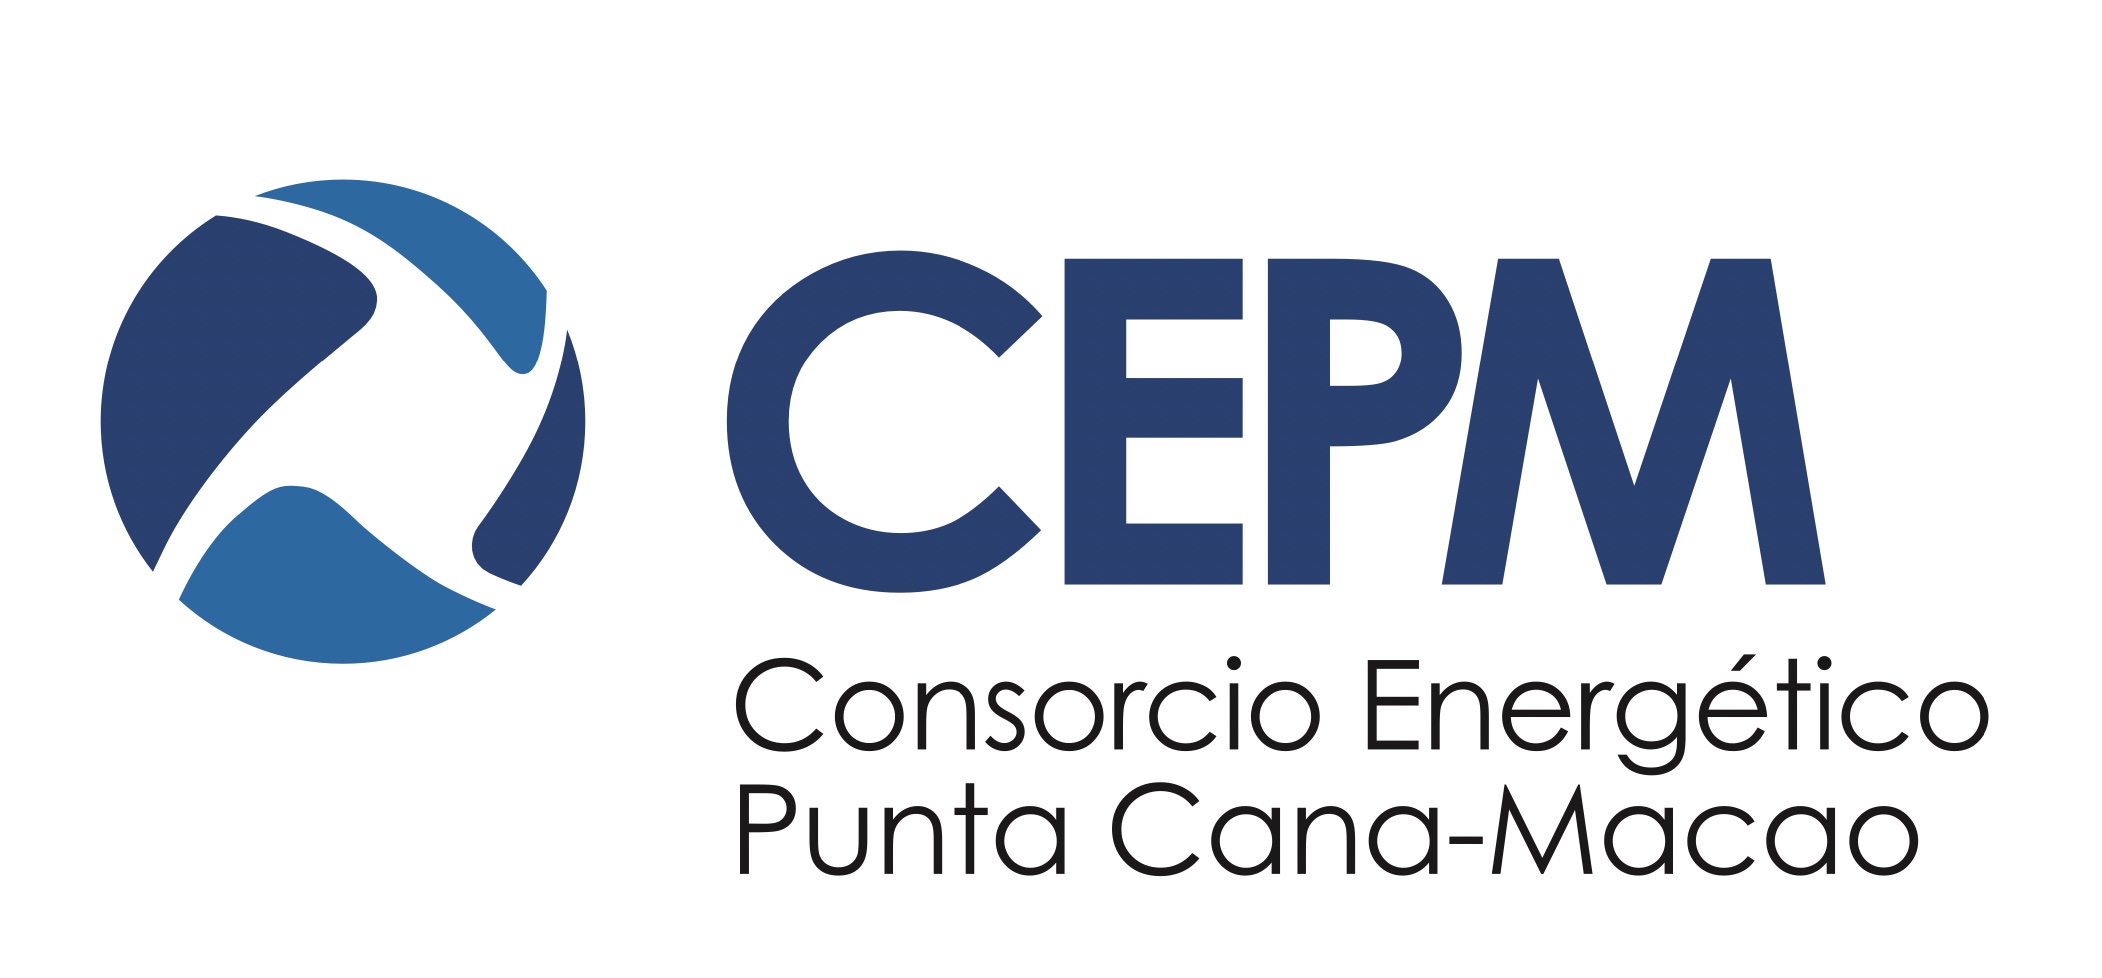 Consorcio Energético Punta Cana Macao (CEPM)